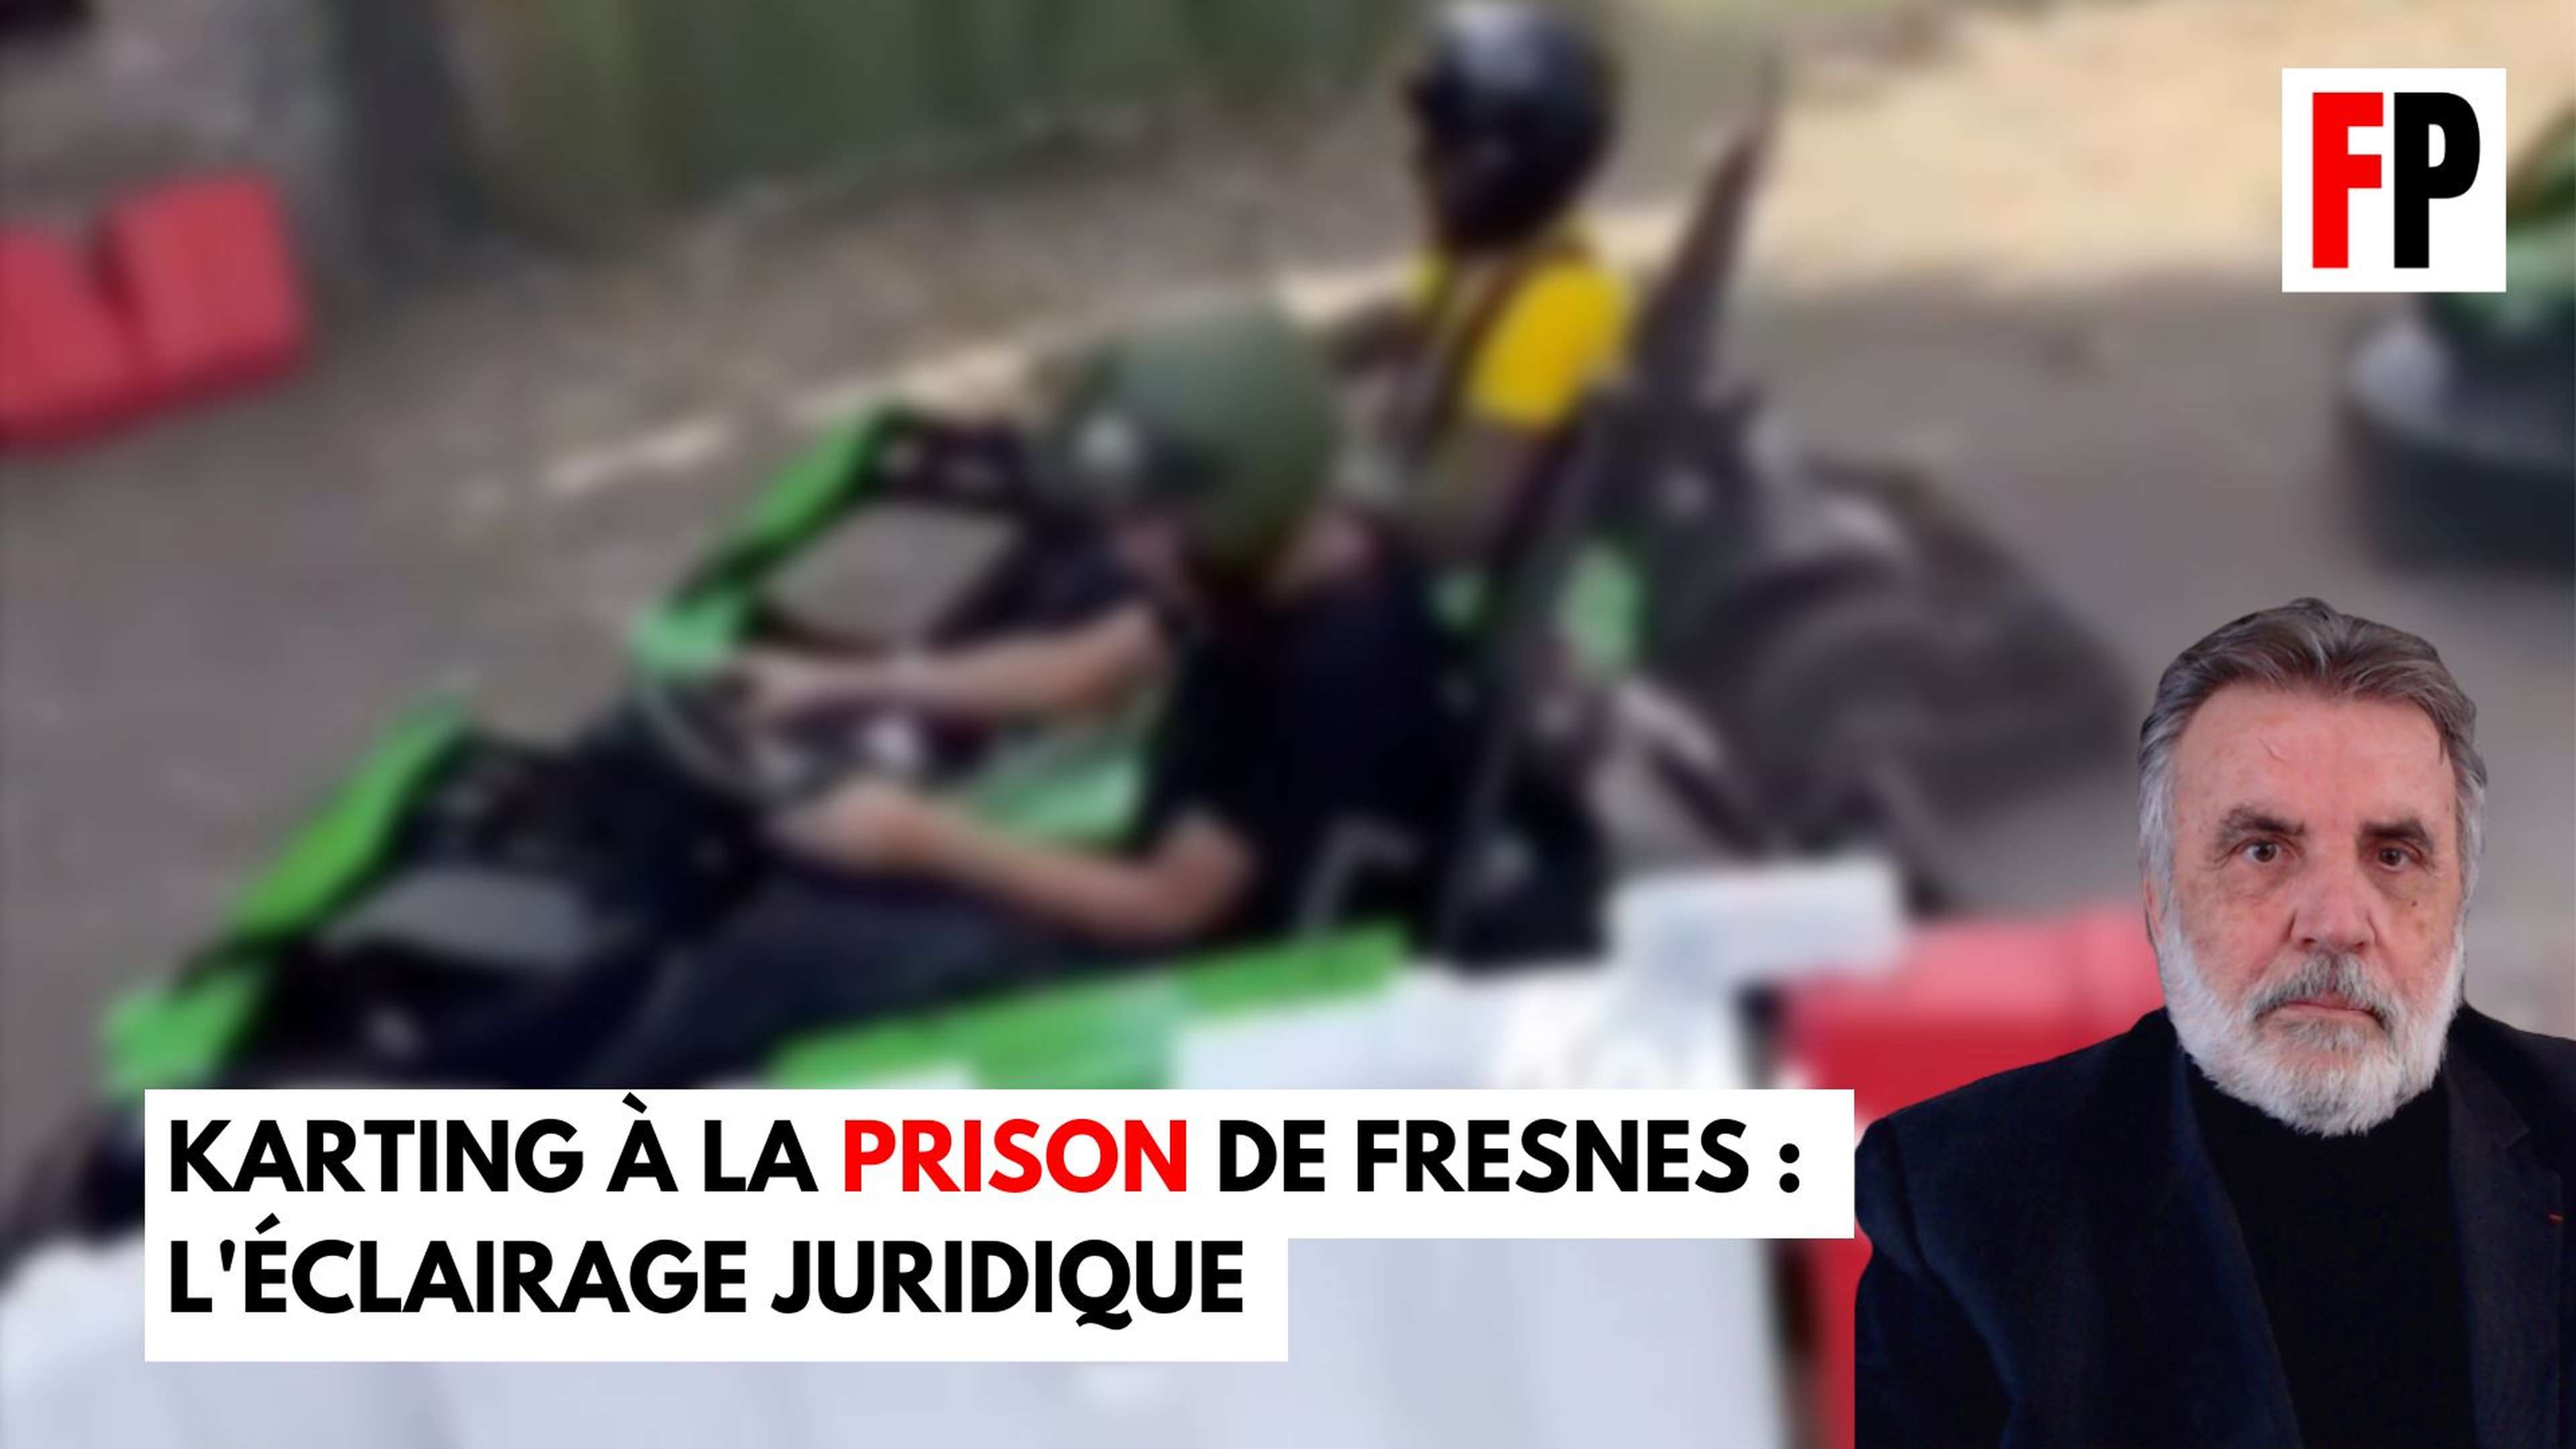 Karting à la prison de Fresnes : "Il faut avoir une vision pragmatique de l'affaire"